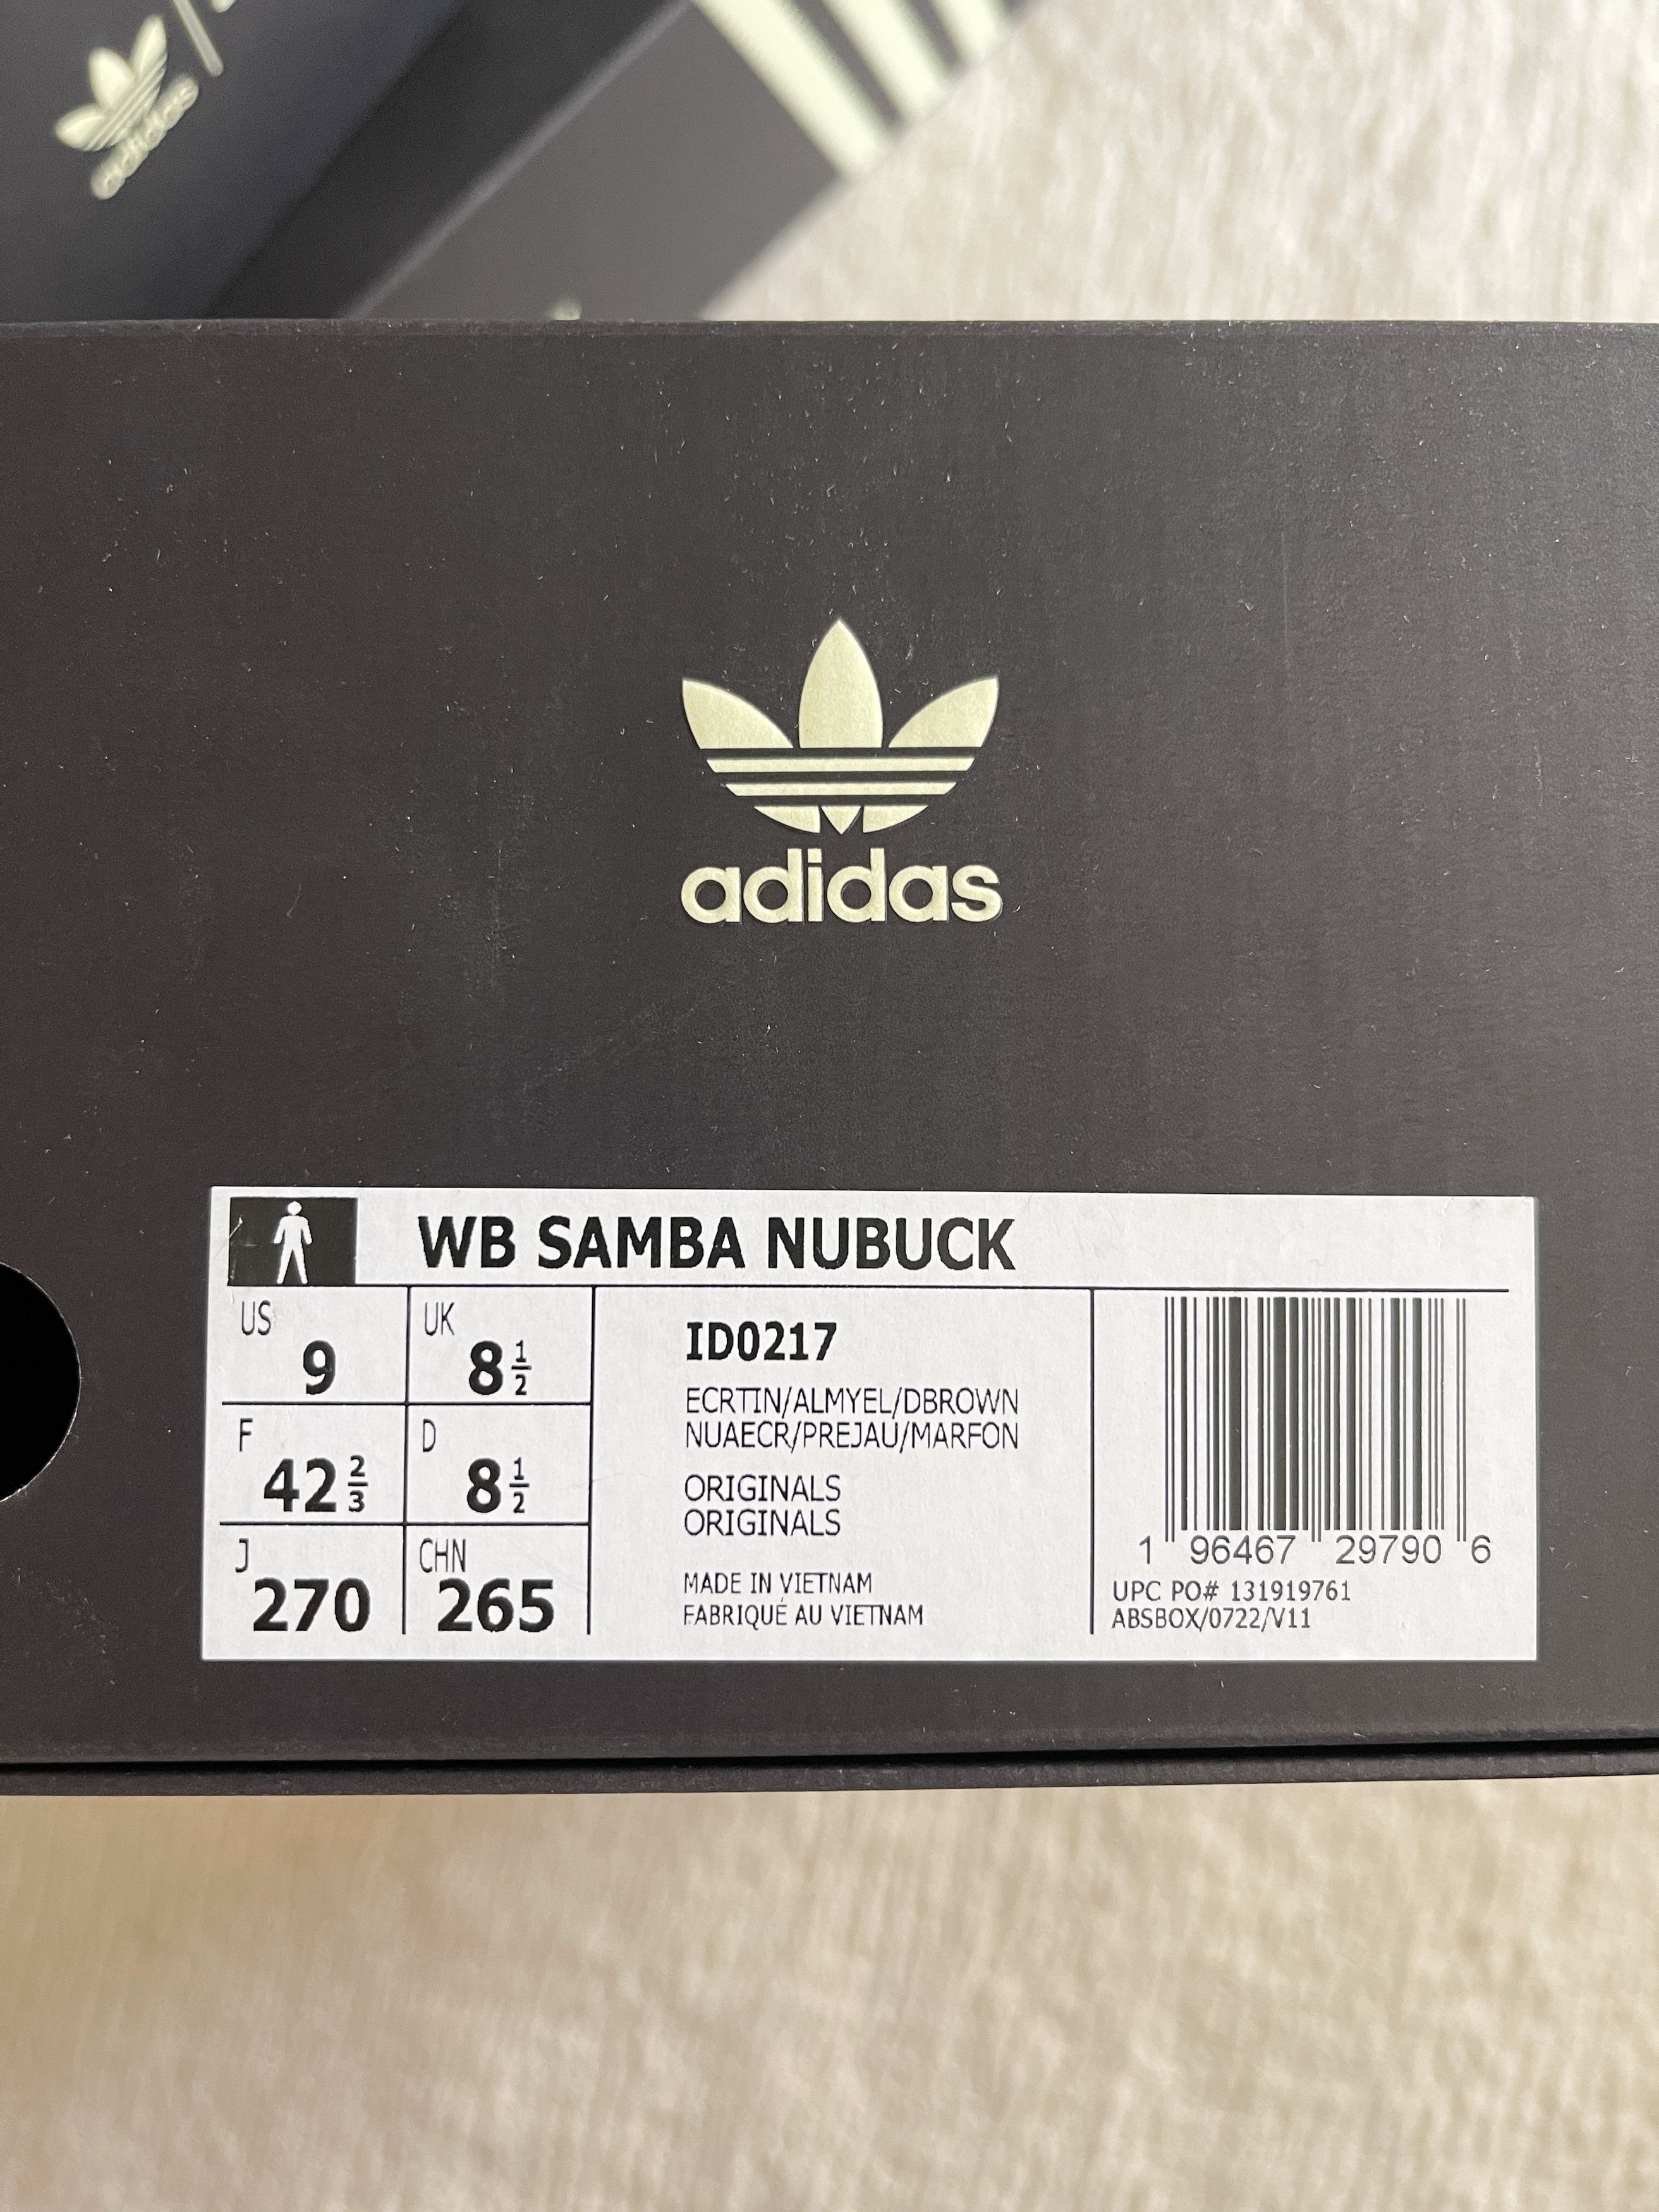 Brand New Wales Bonner x Adidas Samba Nubuck - 11